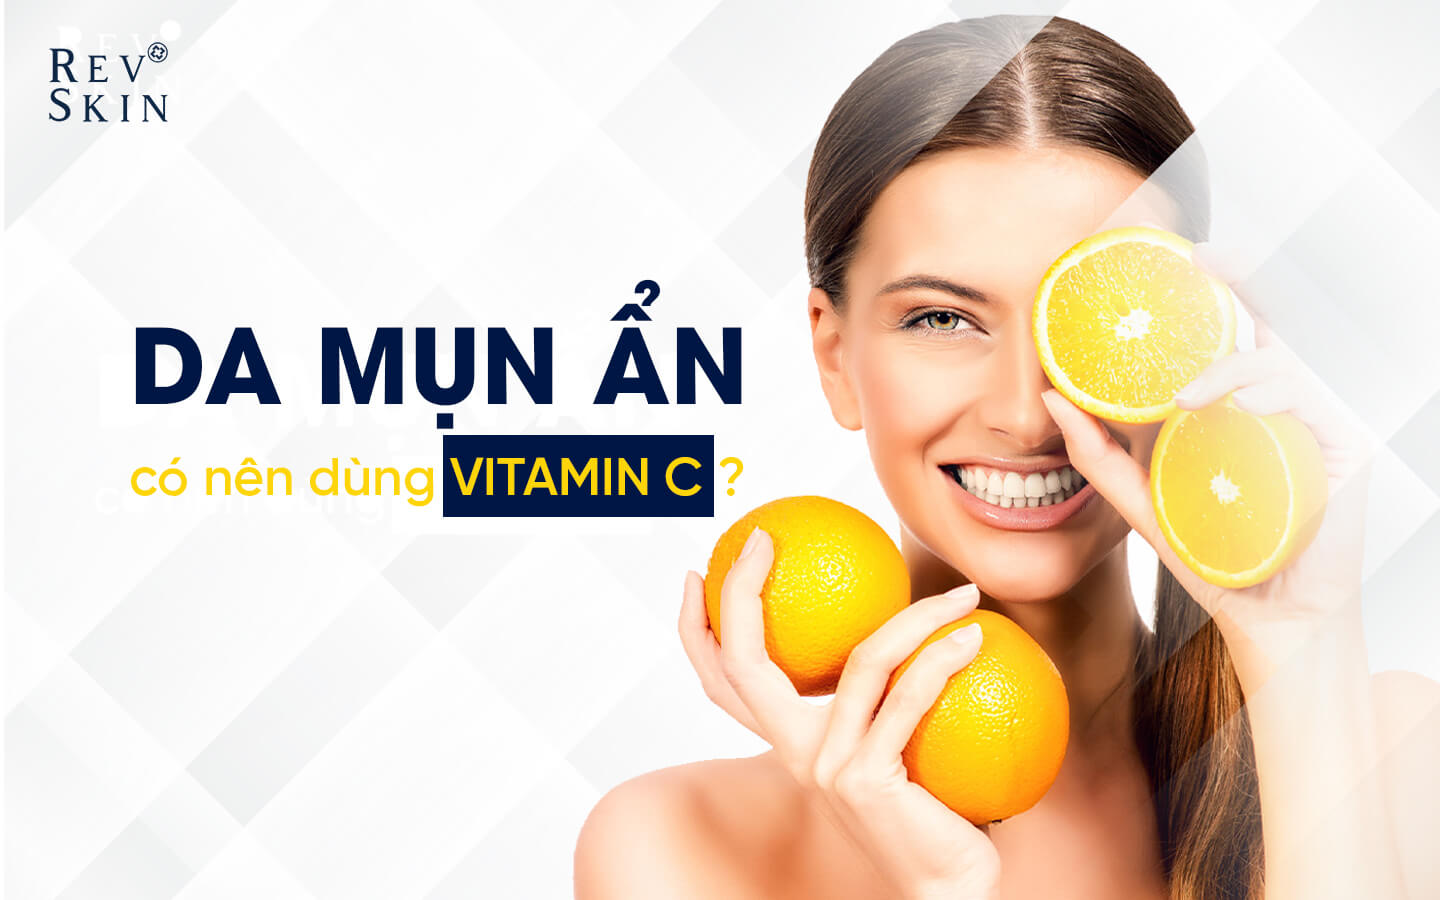 Vitamin C có tác dụng làm mờ vết thâm do mụn ẩn gây ra không?
